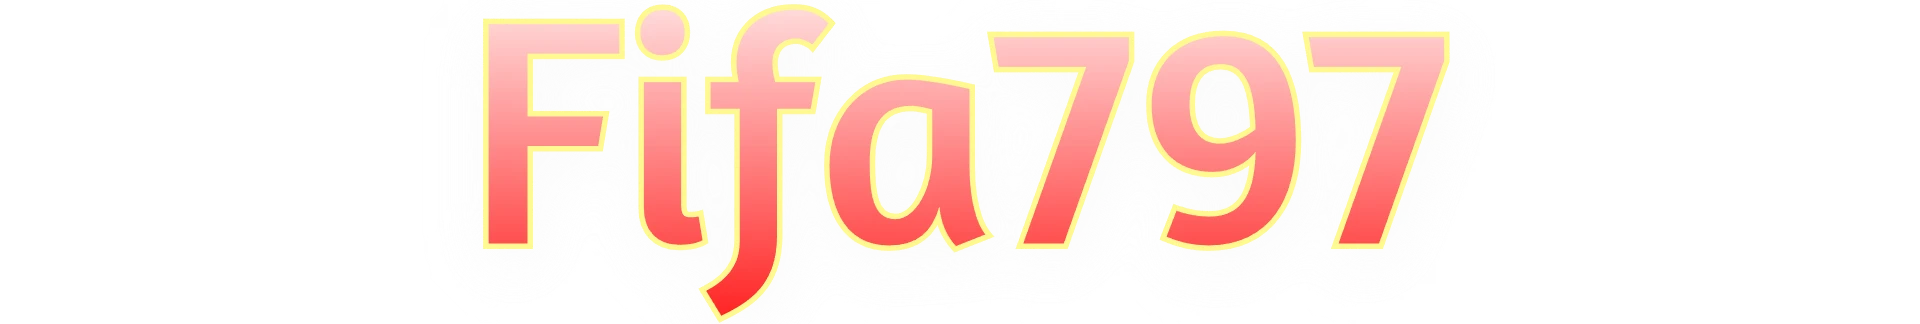 Fifa797